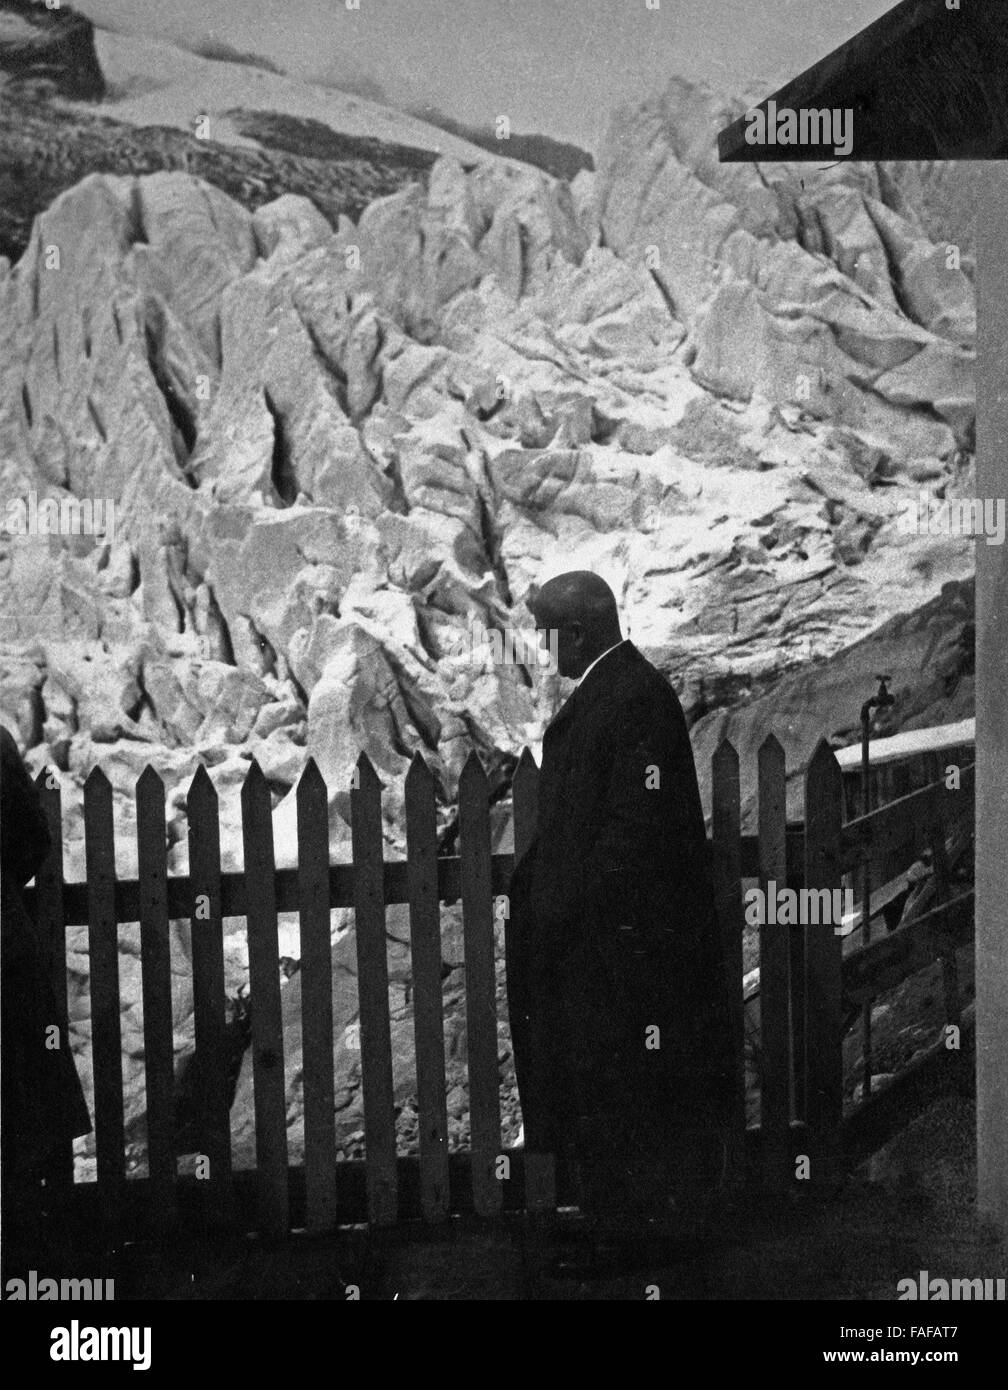 Rhonegletschers Im Kanton Wallis, Schweiz 1930er Jahre bin. Am Rhonegletscher im Kanton Wallis, Schweiz der 1930er Jahre. Stockfoto